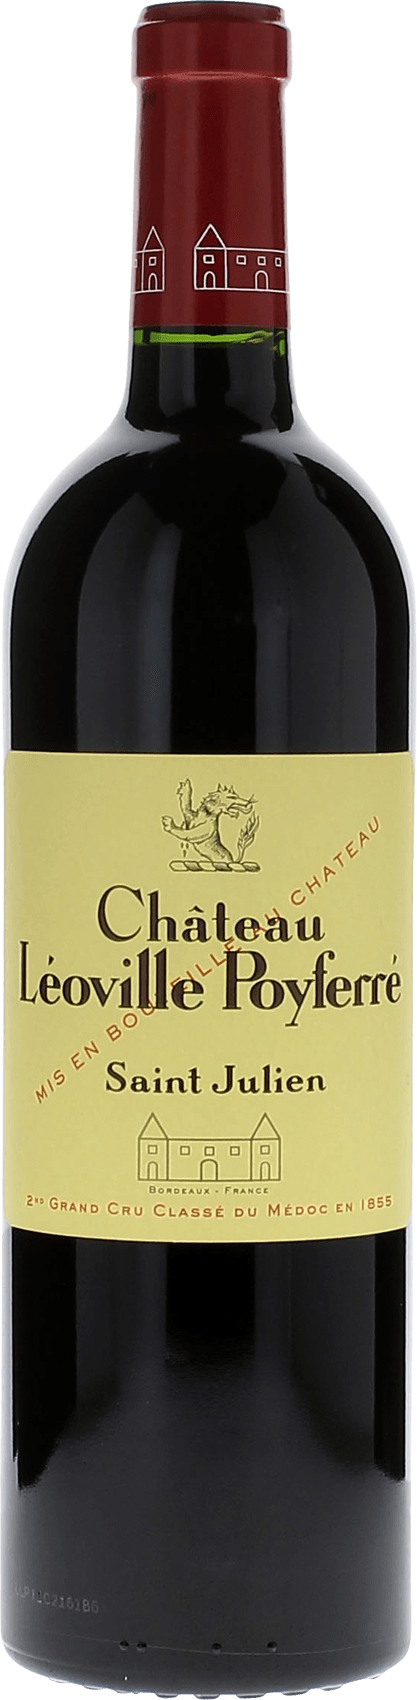 Leoville poyferre 1999 2me Grand cru class Saint-Julien, Bordeaux rouge